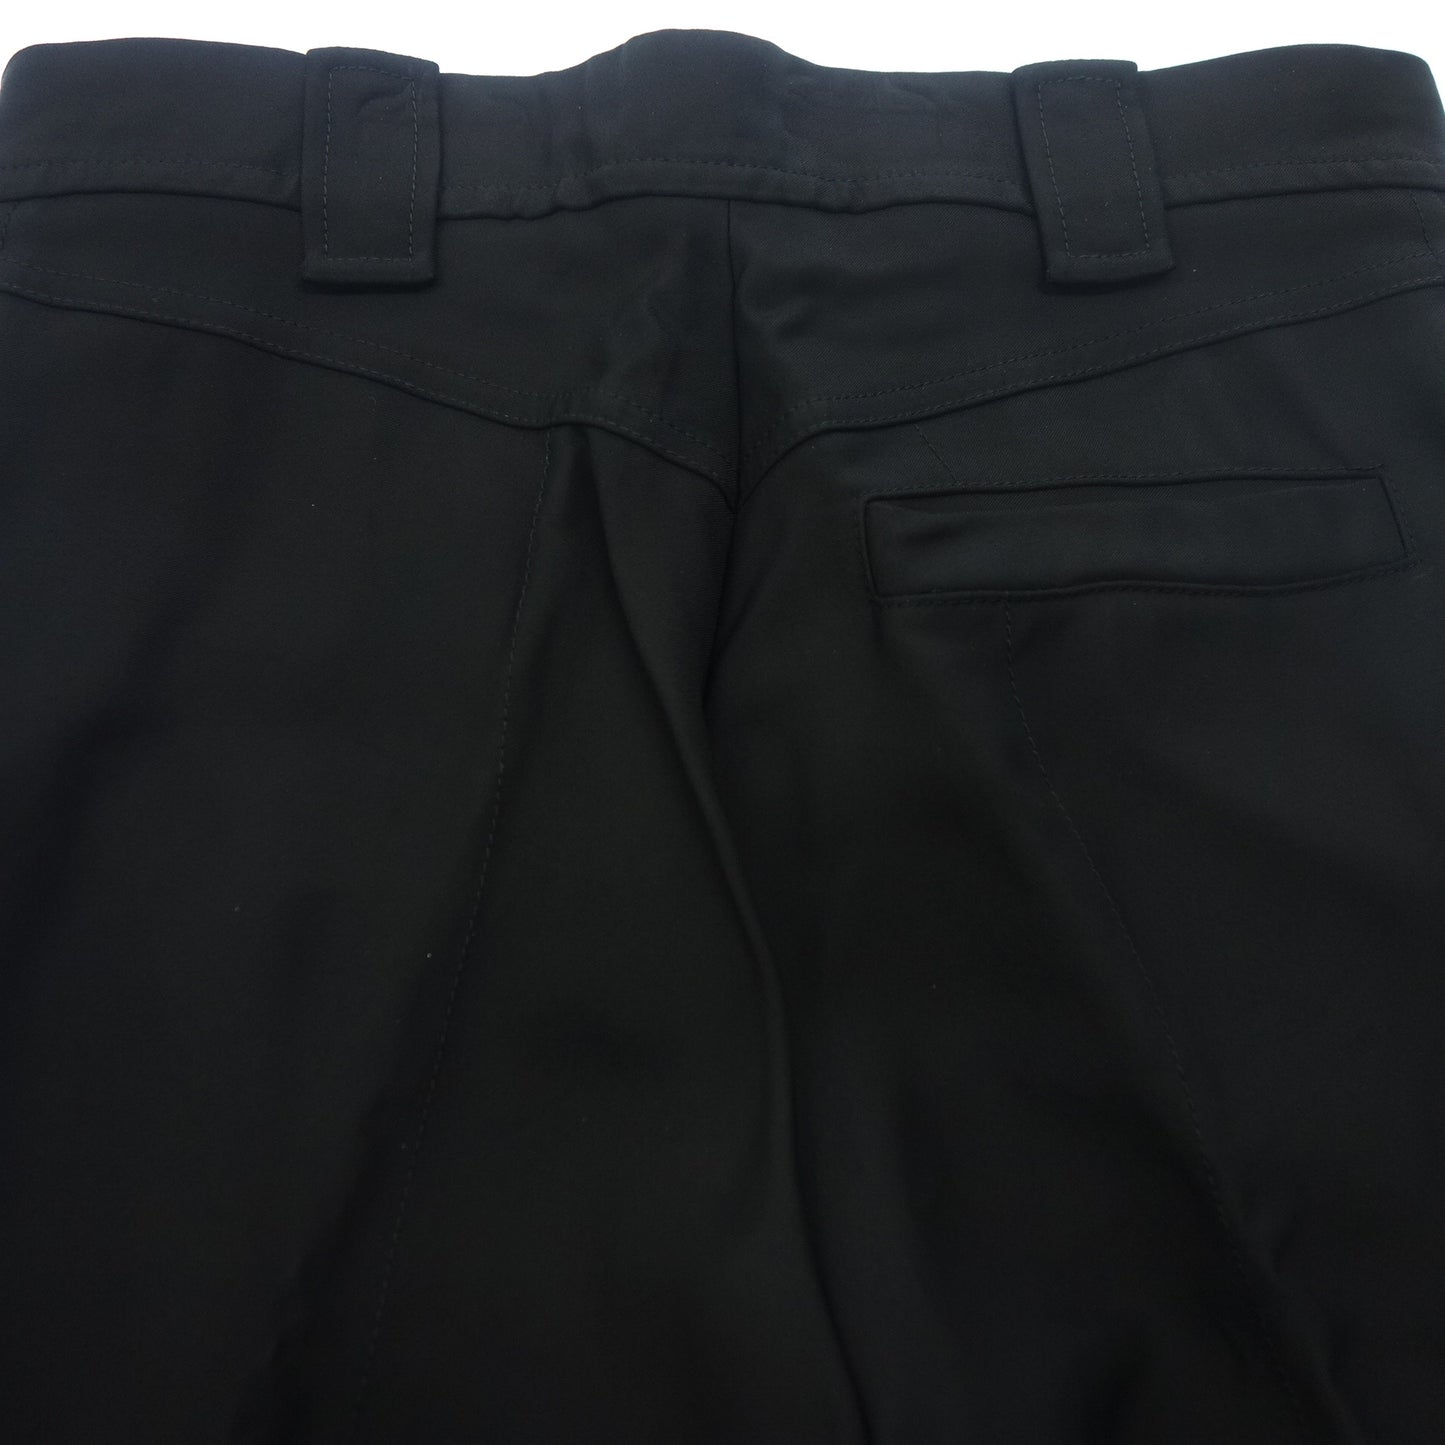 状态良好◆路易威登休闲裤人造丝 LV 金属零件 RW161A 尺寸 36 女士黑色 LOUIS VUITTON [AFB20] 